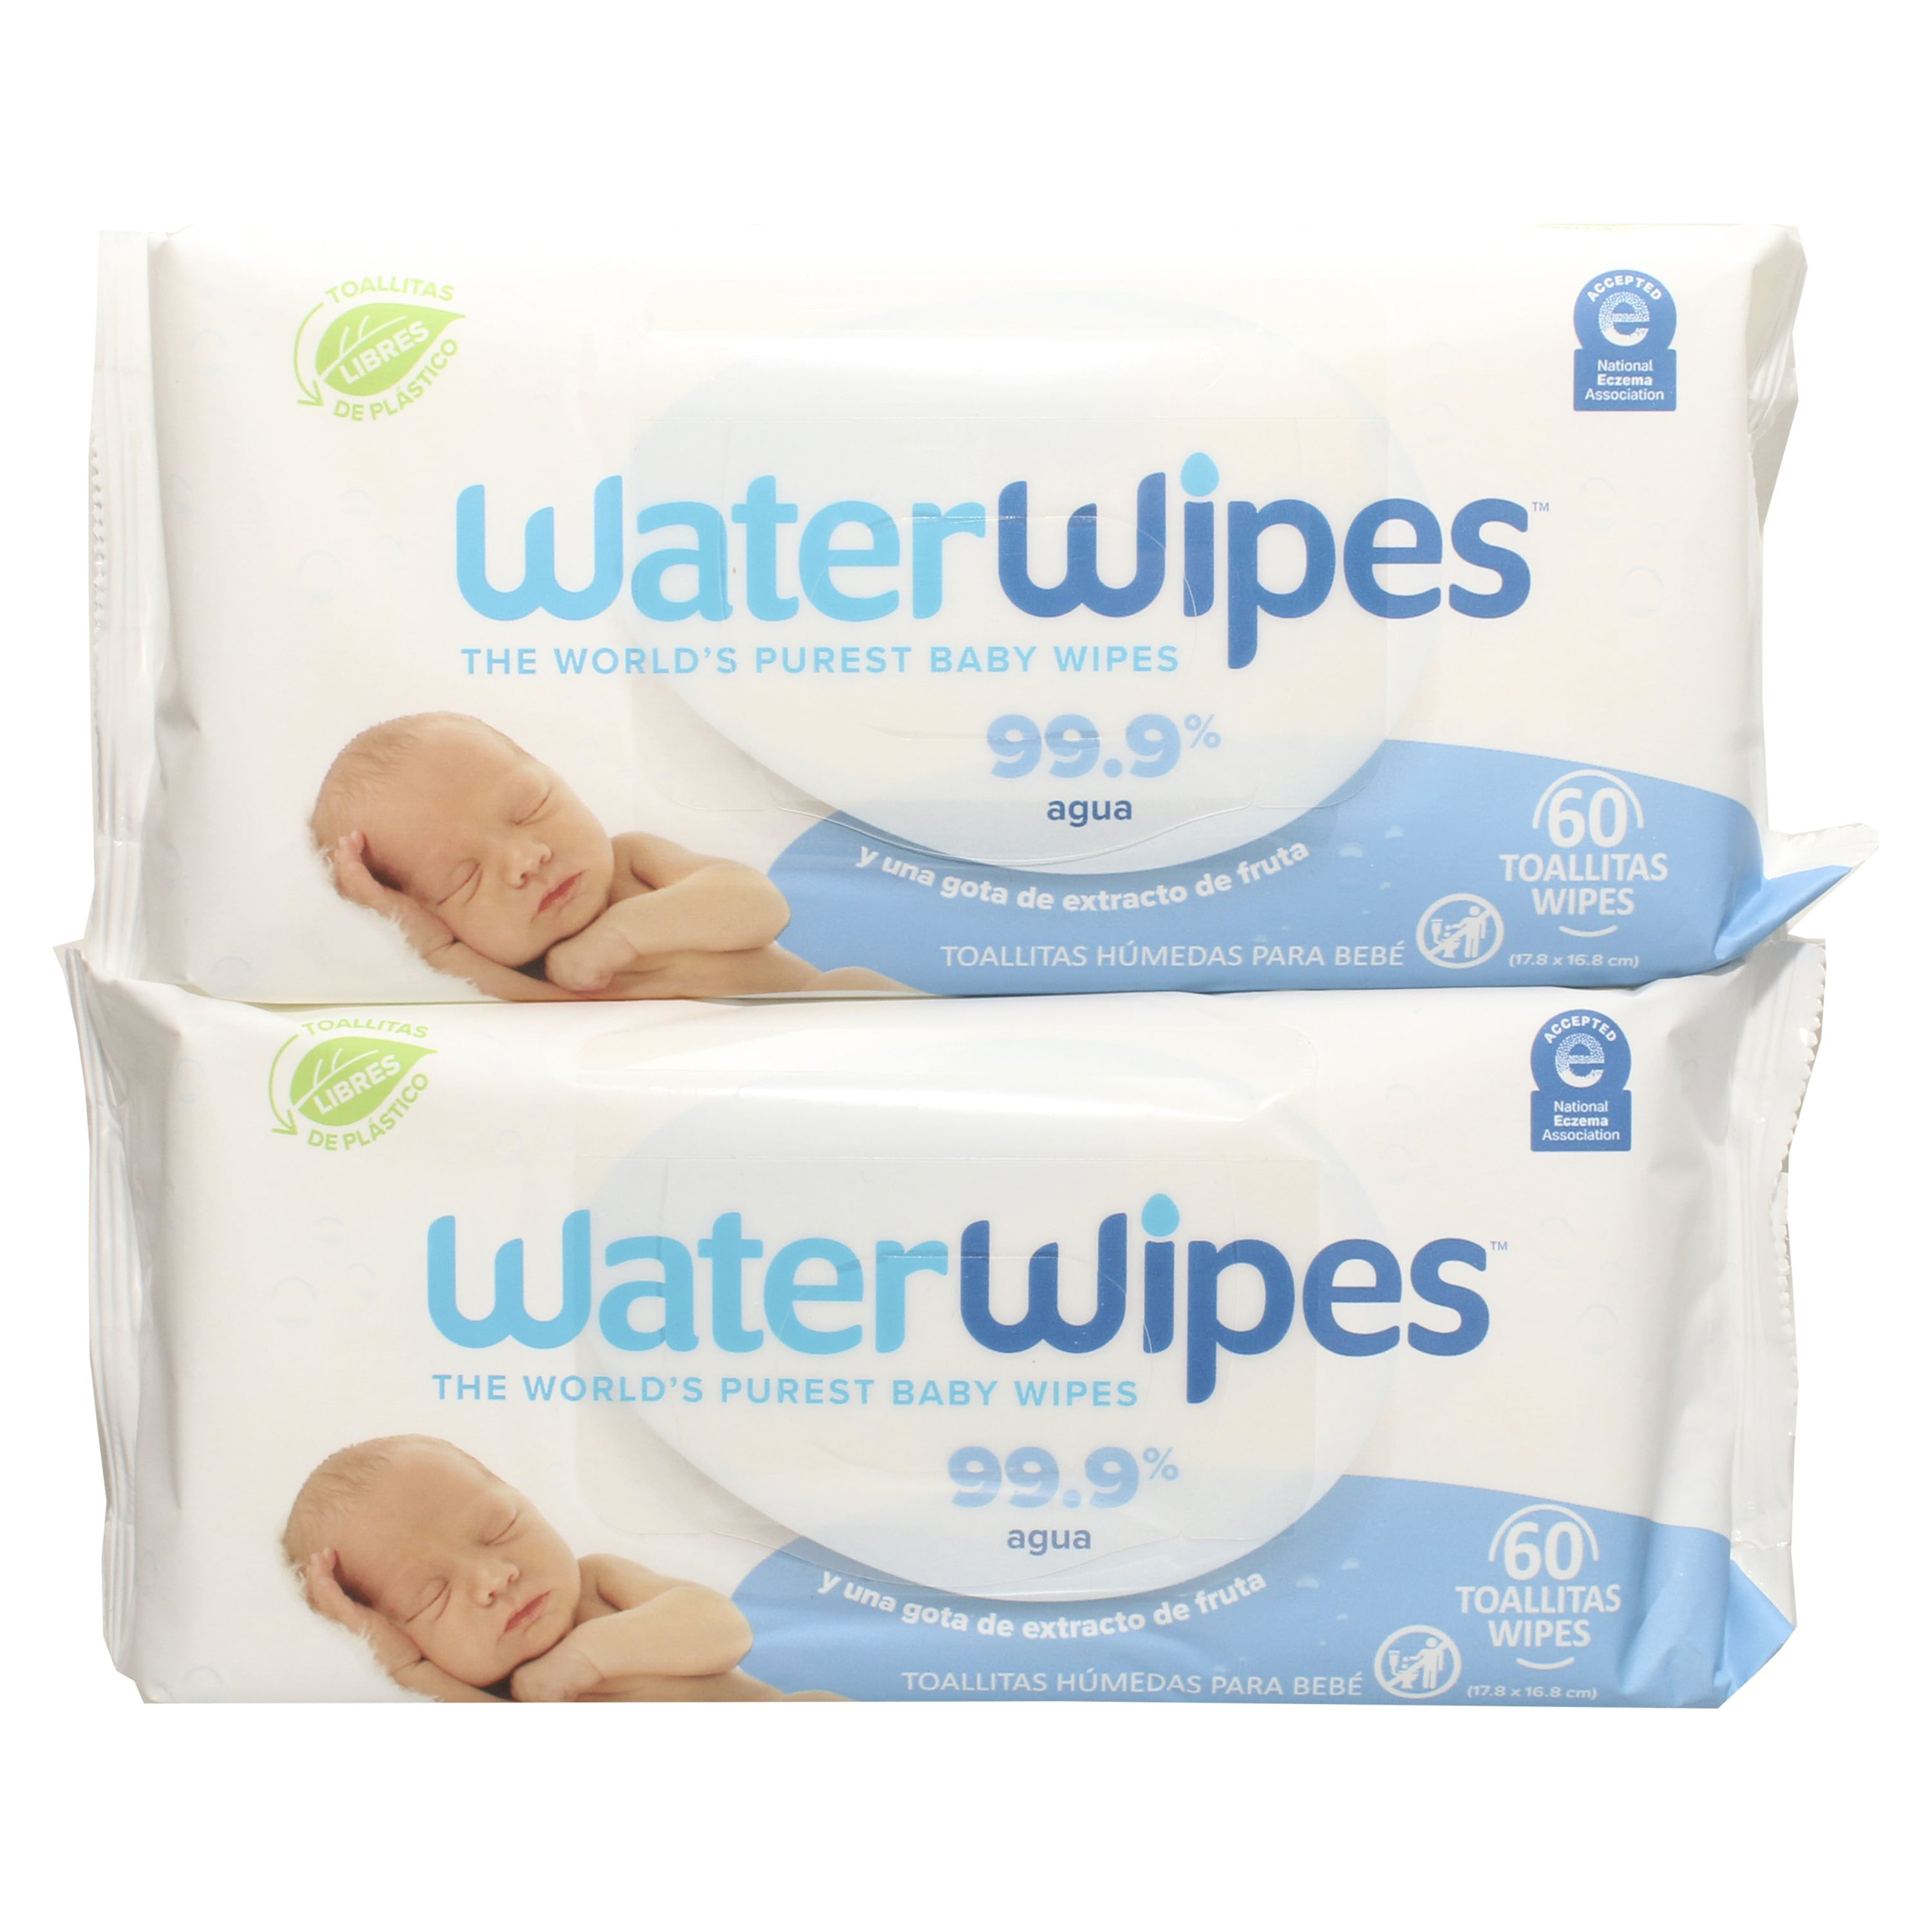 Water Wipes, Toallitas Húmedas para Bebé, 99.9% Water, Super Value Box 540  Wipes - Superunico - El Supermercado 100% Online de Panamá